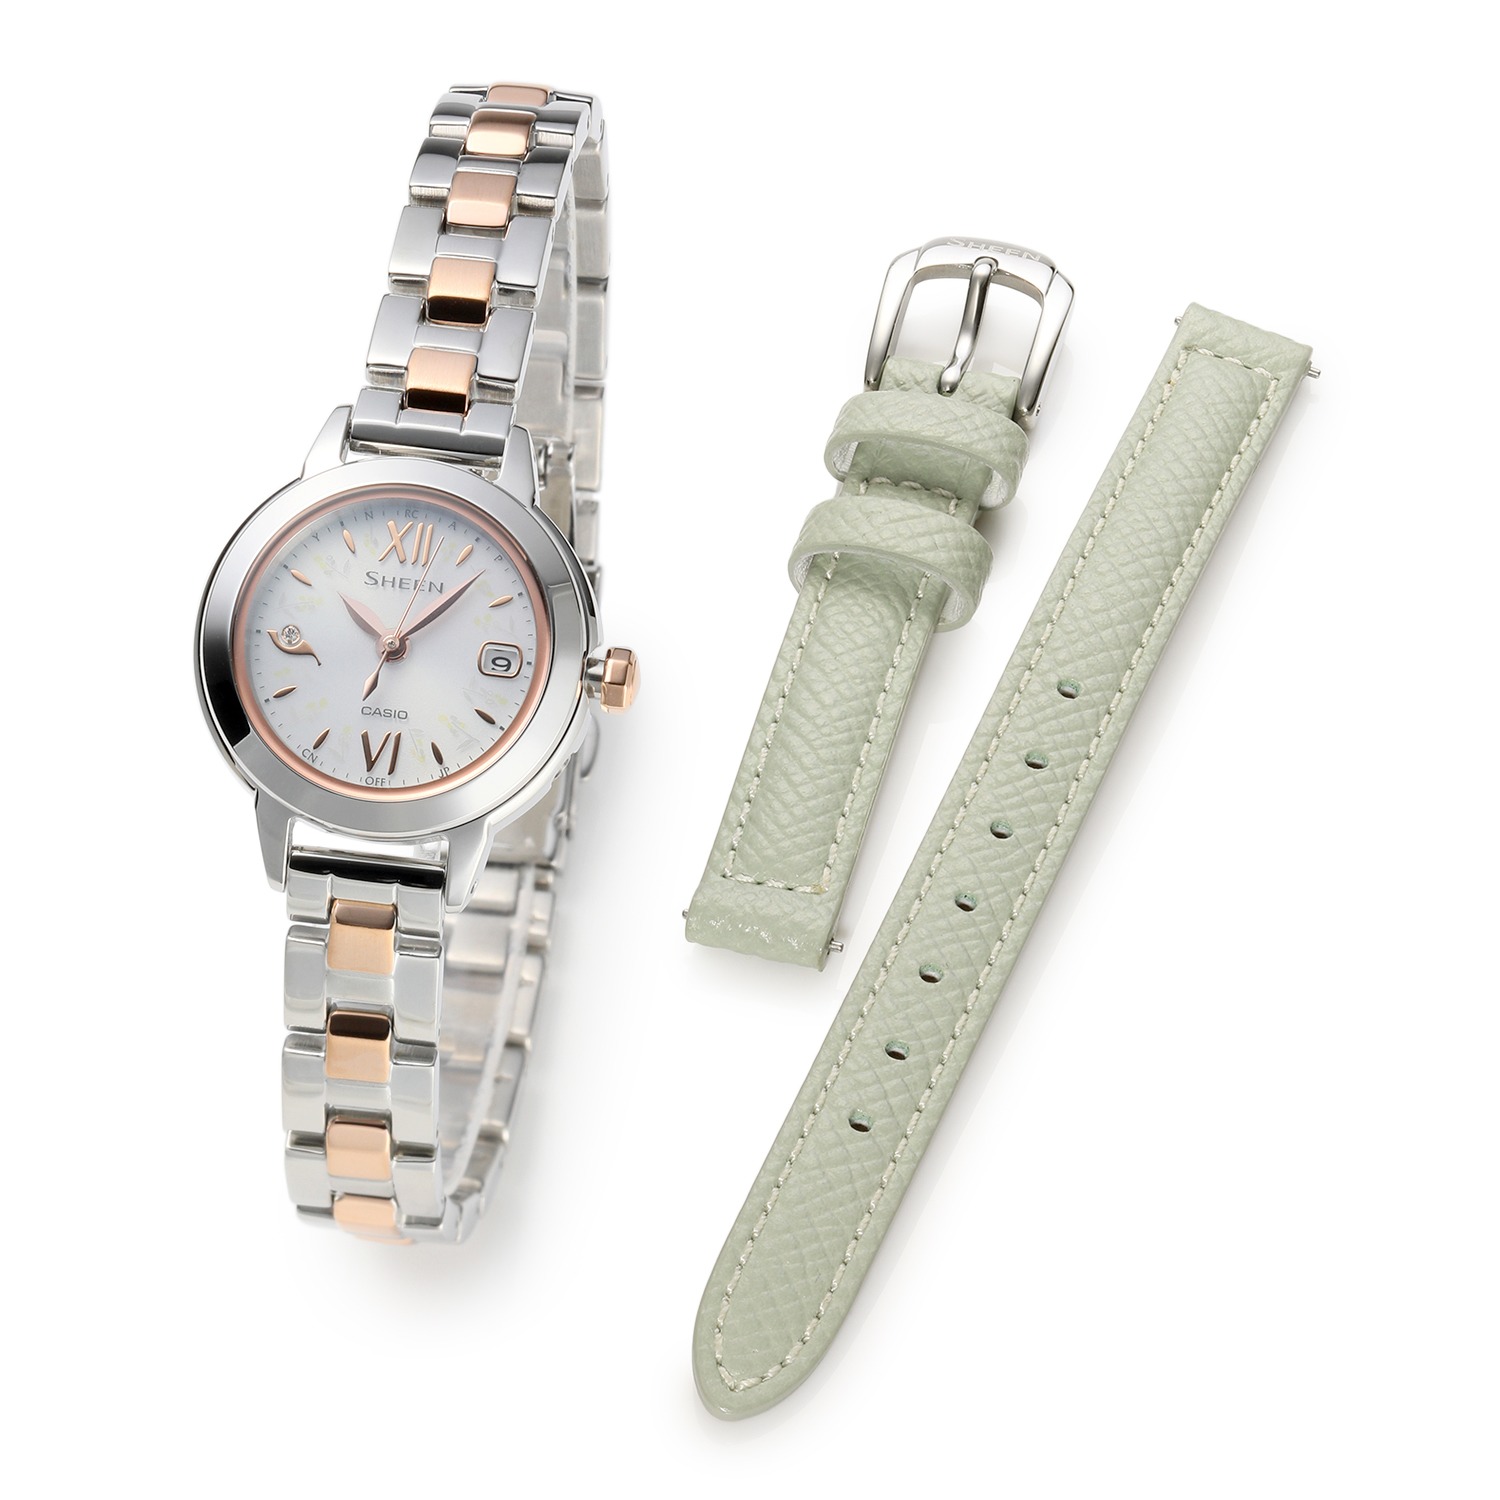 【希少】SHEEN ソーラー レディース腕時計 腕時計(アナログ) 時計 レディース 海外規格